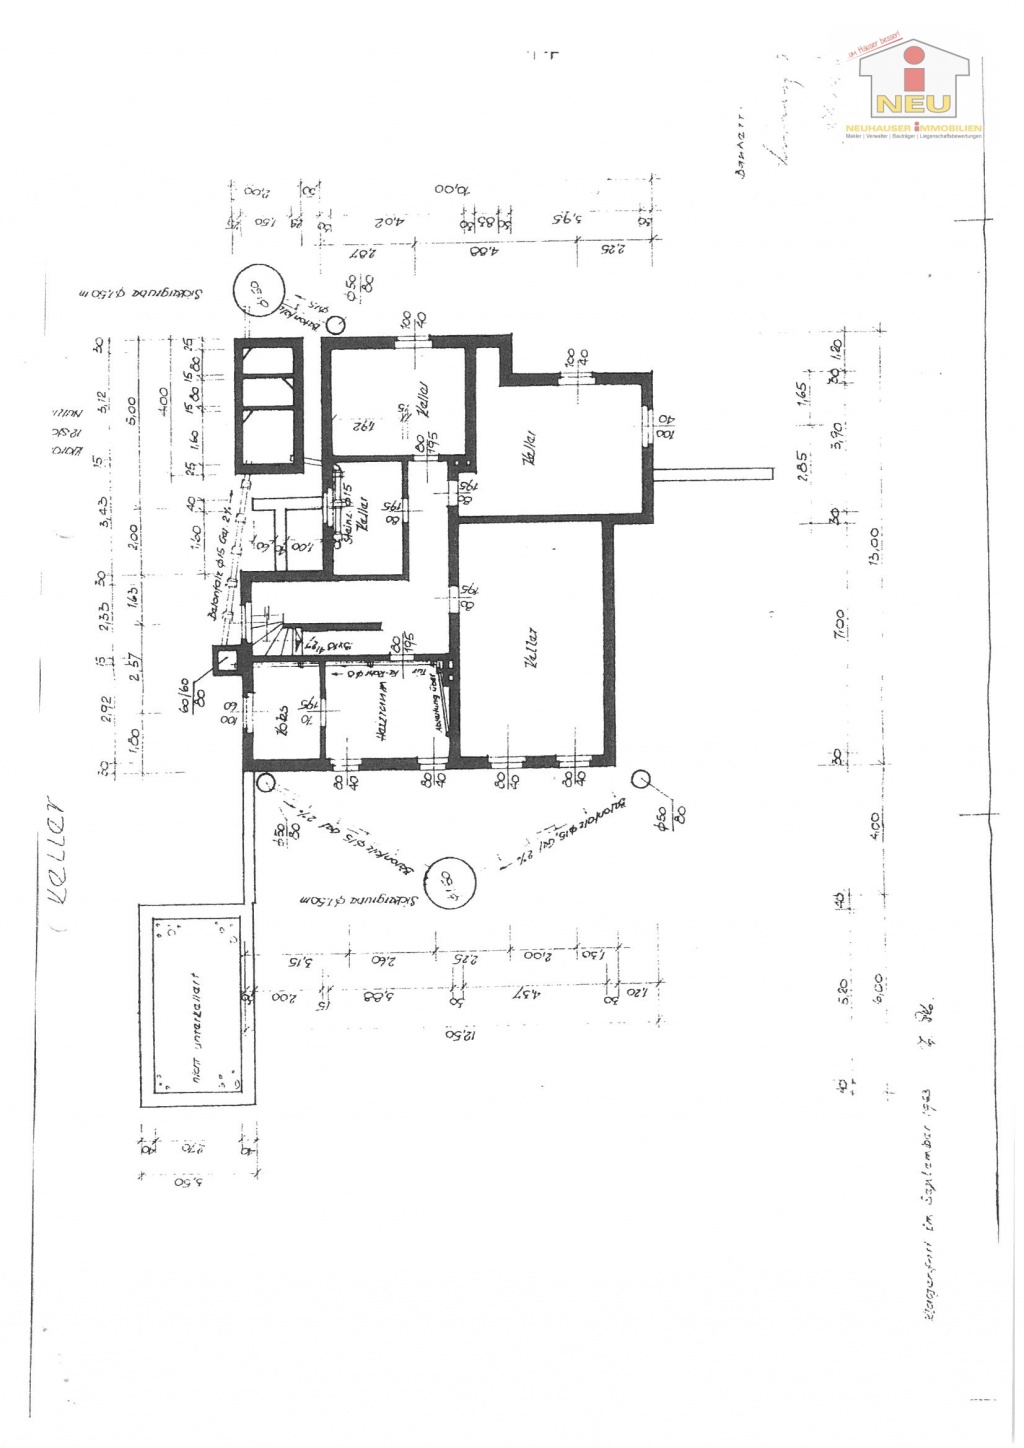 Irrtümer zentrale Wohnhaus - Saniertes Zweifamilienwohnhaus 185m² in Moosburg